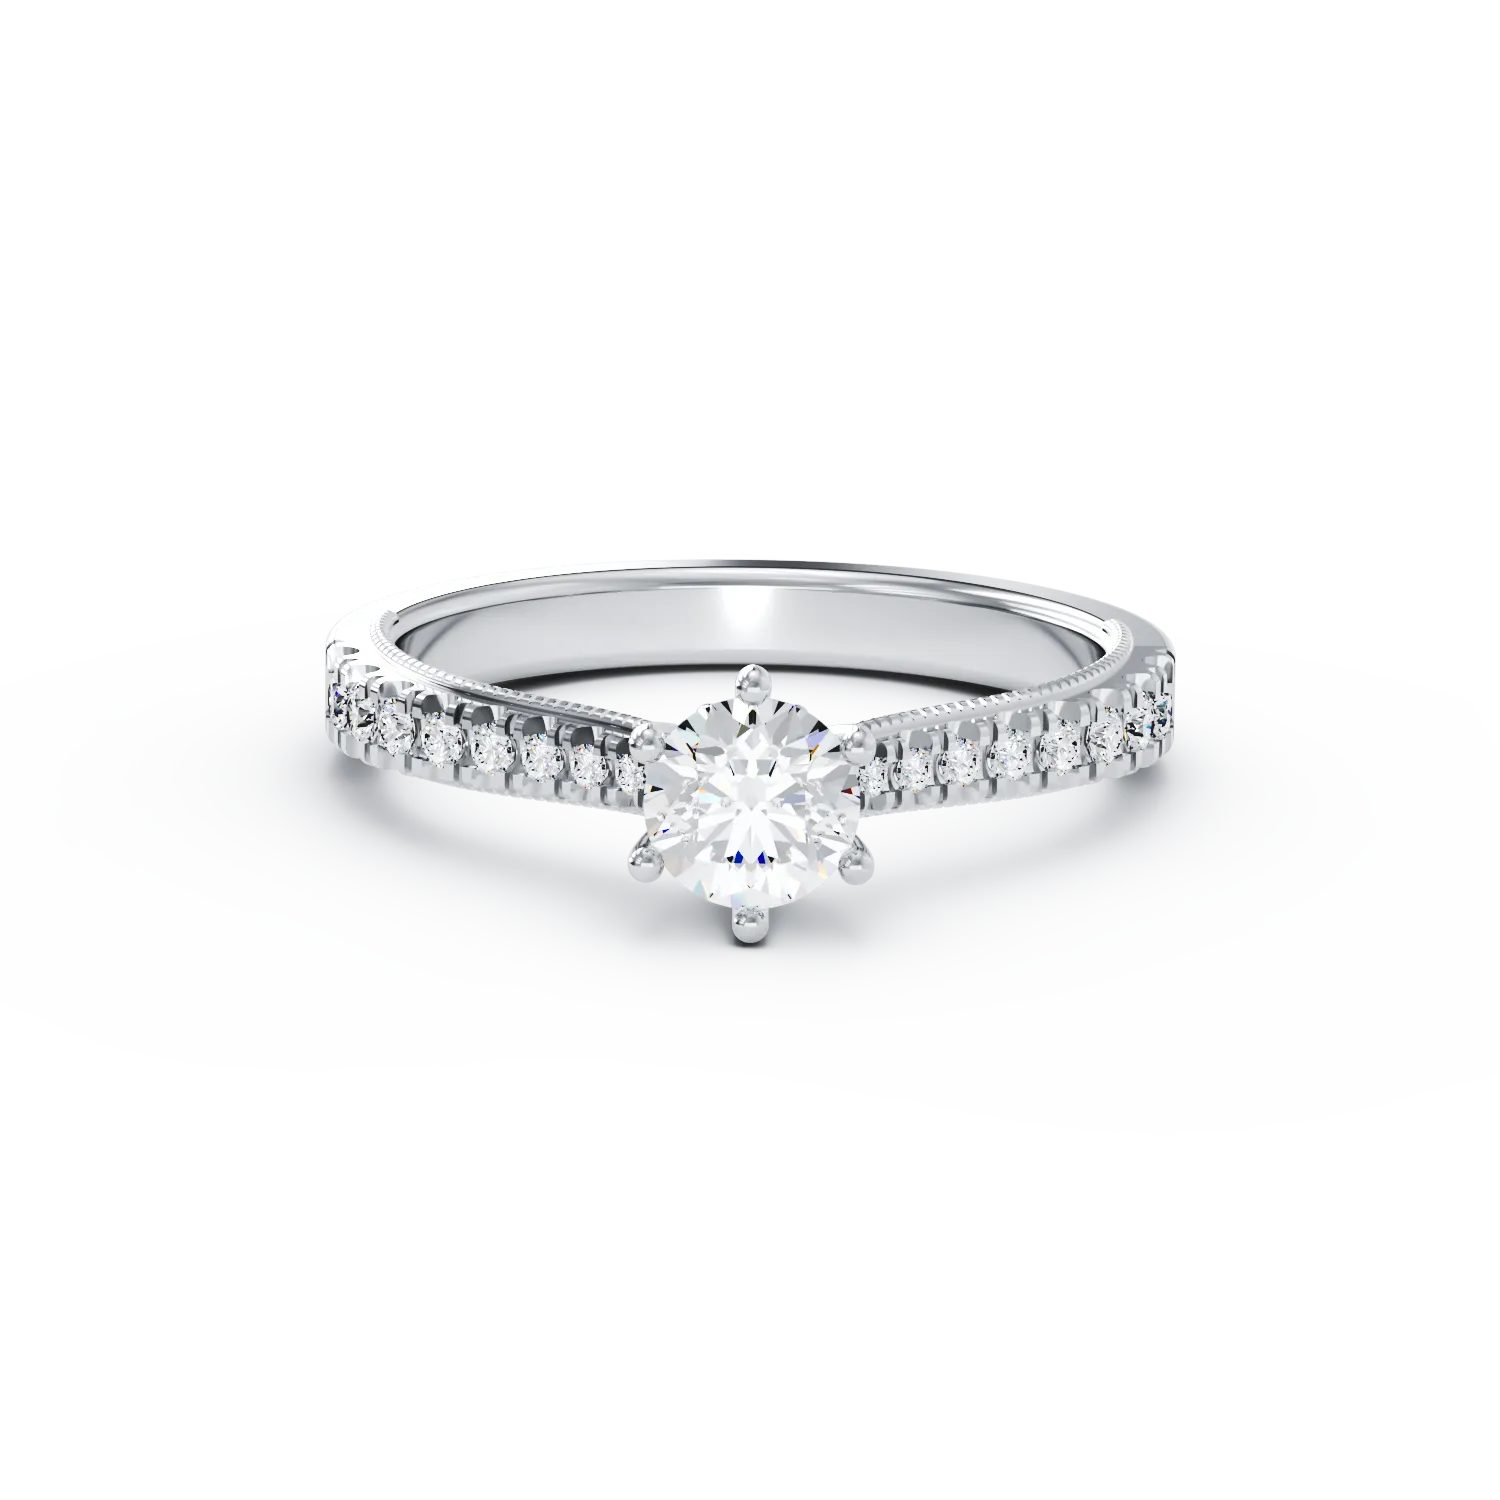 Eljegyzési gyűrű 18K-os fehér aranyból 0,16ct gyémánttal és 0,17ct gyémánttal. Gramm: 2,31